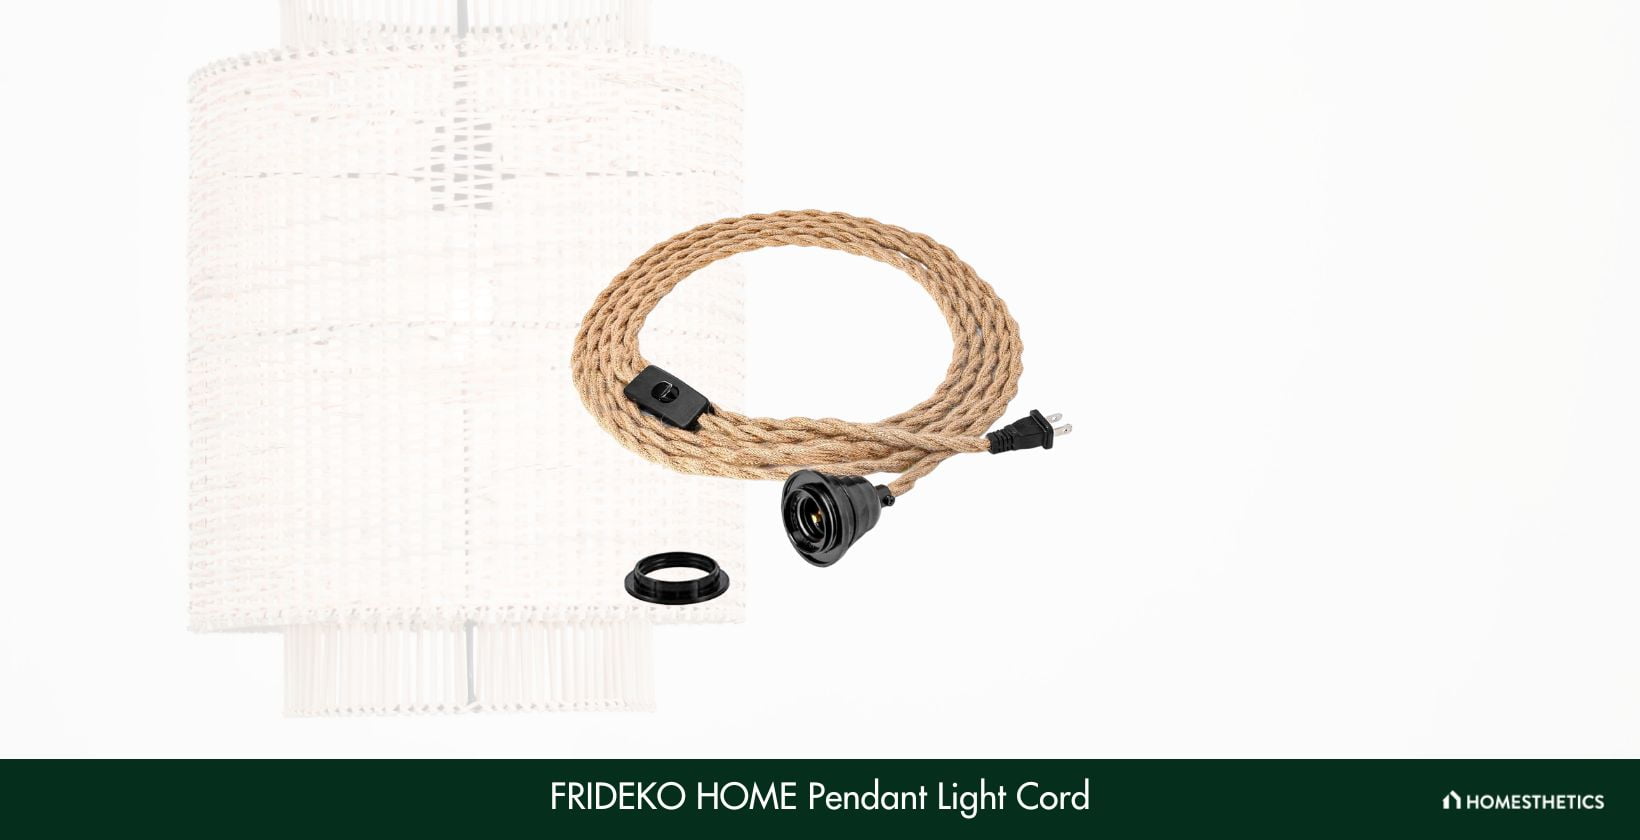 FRIDEKO HOME Pendant Light Cord